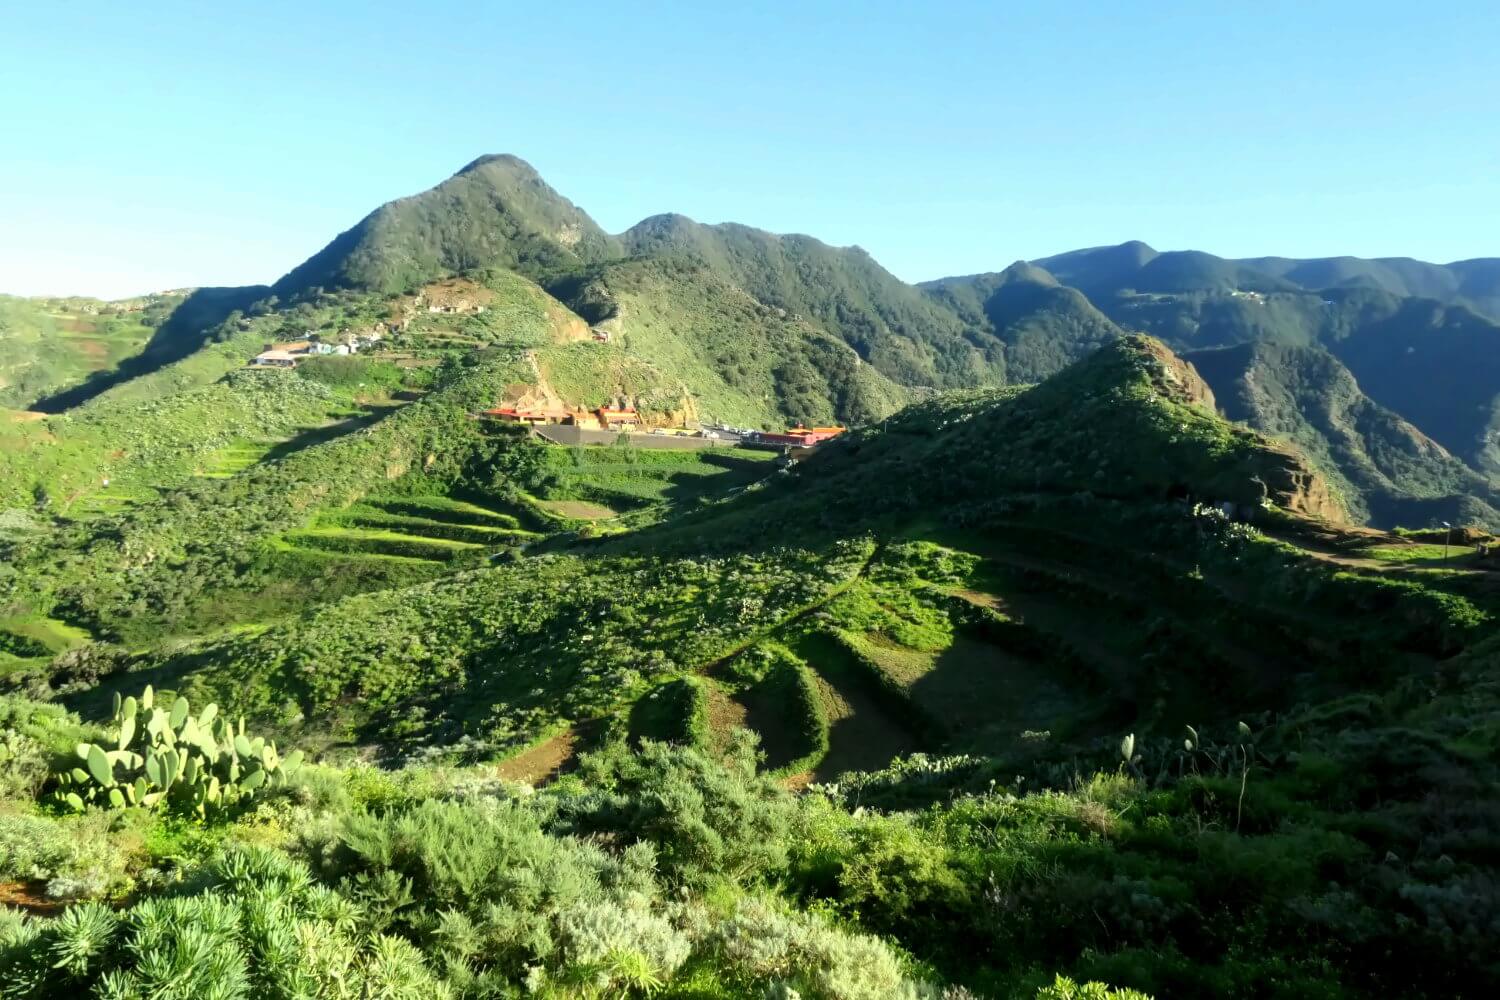 Chinamada mit Terrassen, ein bekanntes Dorf im Anaga-Gebirge.